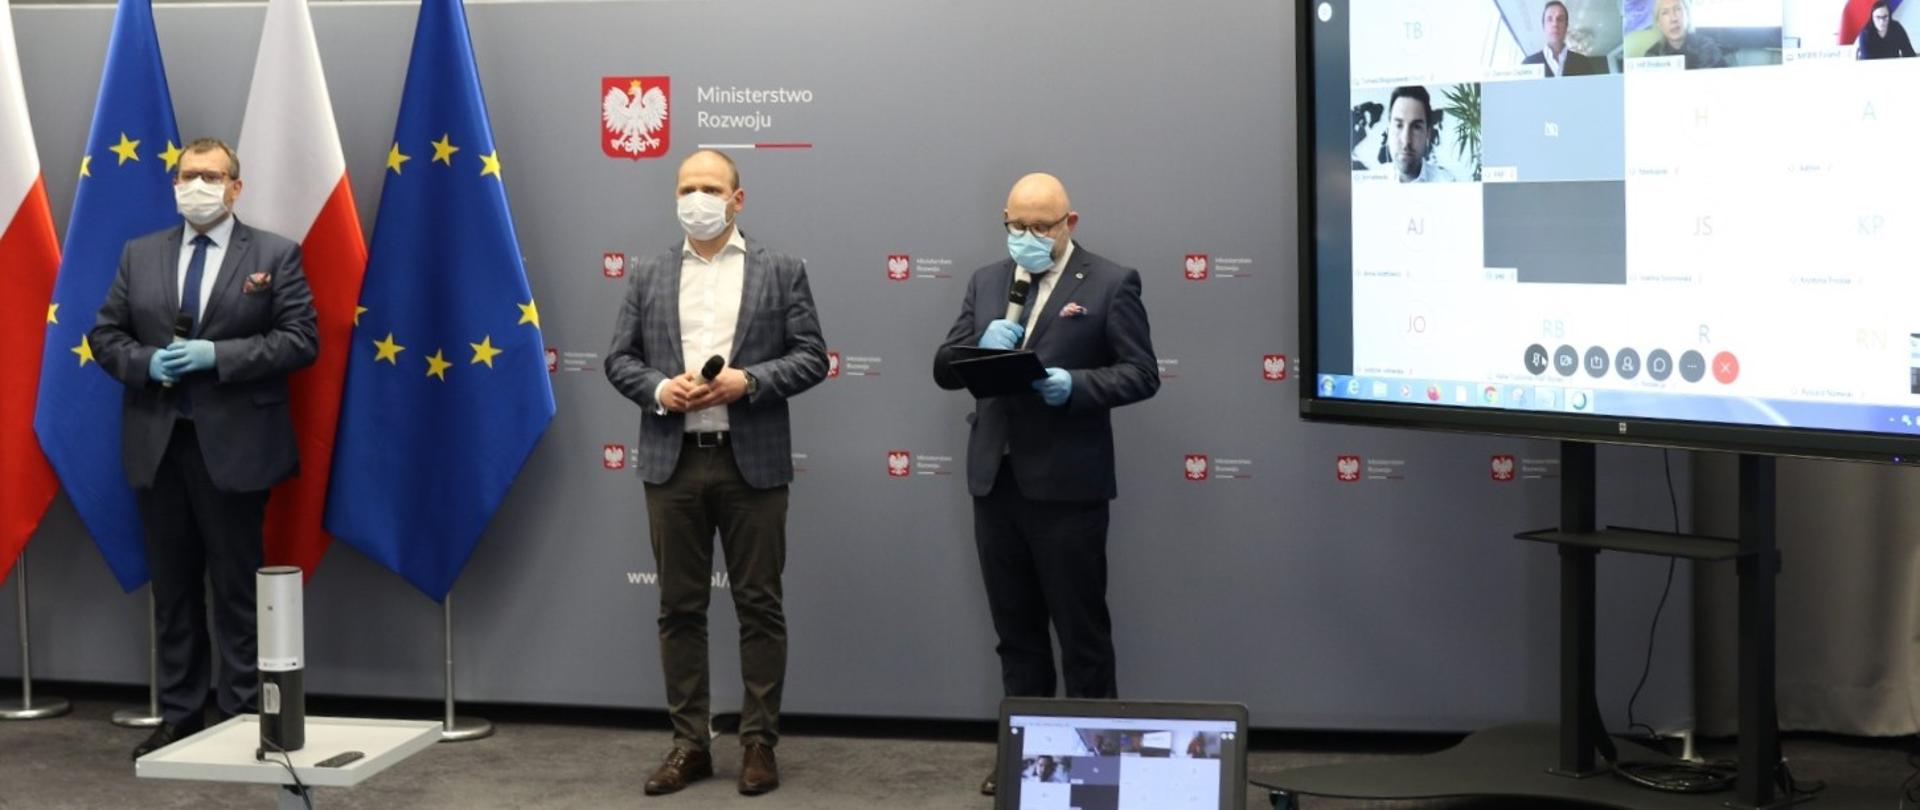 Konferencja prasowa. Po lewej stronie stoi wiceprezes ARP Kolczyński, w środku wiceminister Mazur, a z prawej strony dyrektor Sokoliński z ARP. Panowie mają na twarzach maseczki ochronne. Skrajnie po prawej stronie widać ekran z uczestnikami telekonferencji.